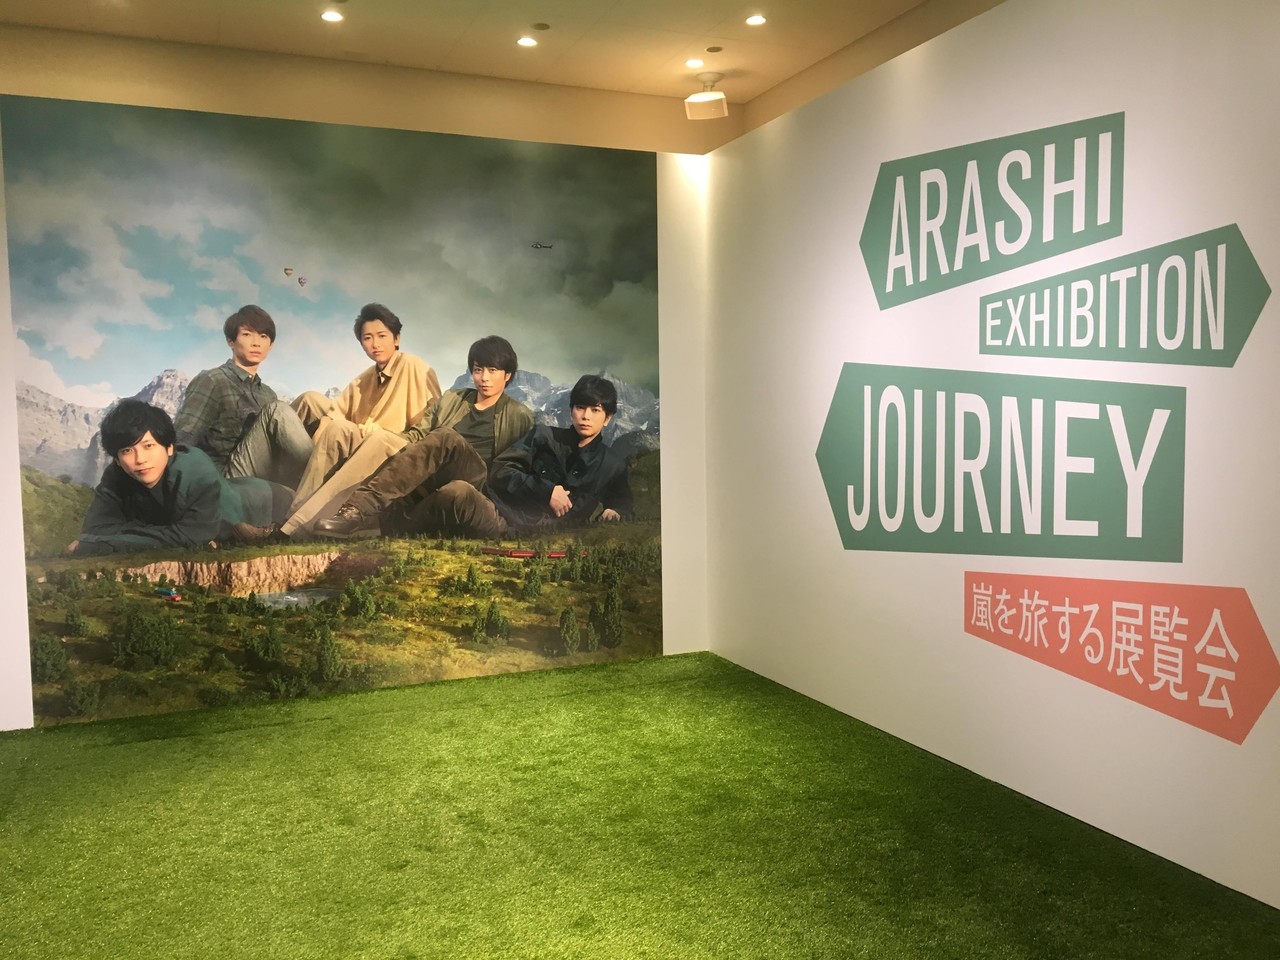 Arashi Exhibition Journey 嵐を旅する展覧会 Badgirl Note